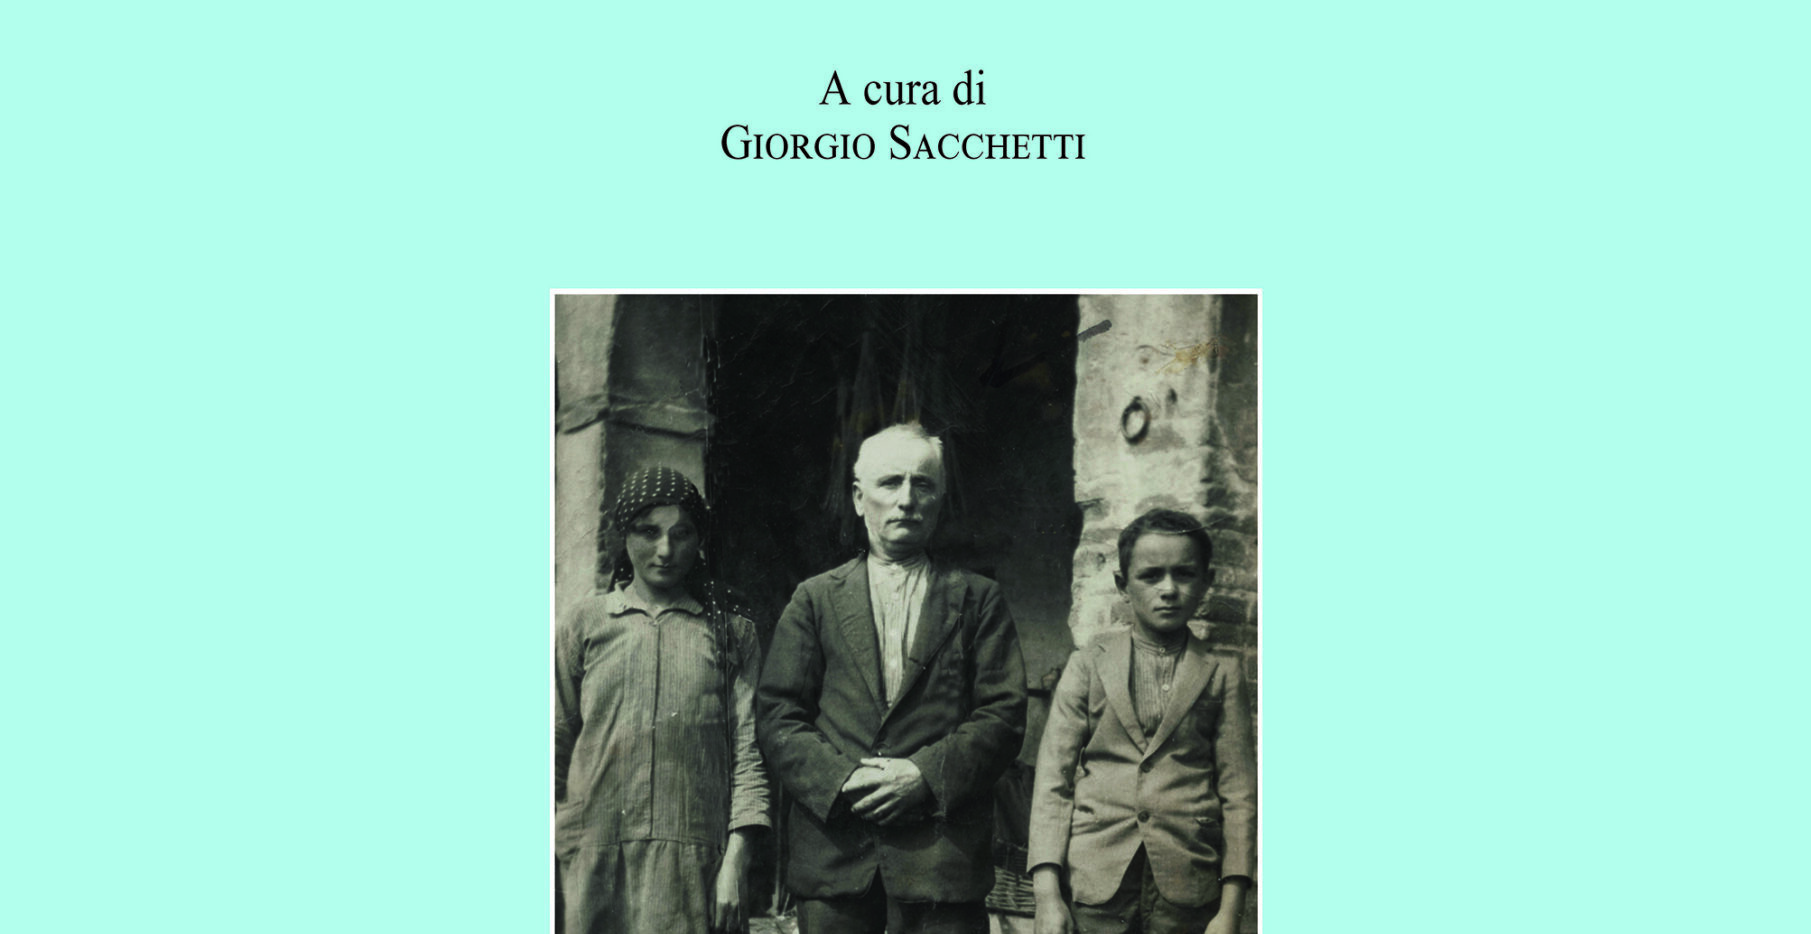 Società Storica Aretina: il prof. Fabio Bertini presenta il libro “Il Futuro Altrove”